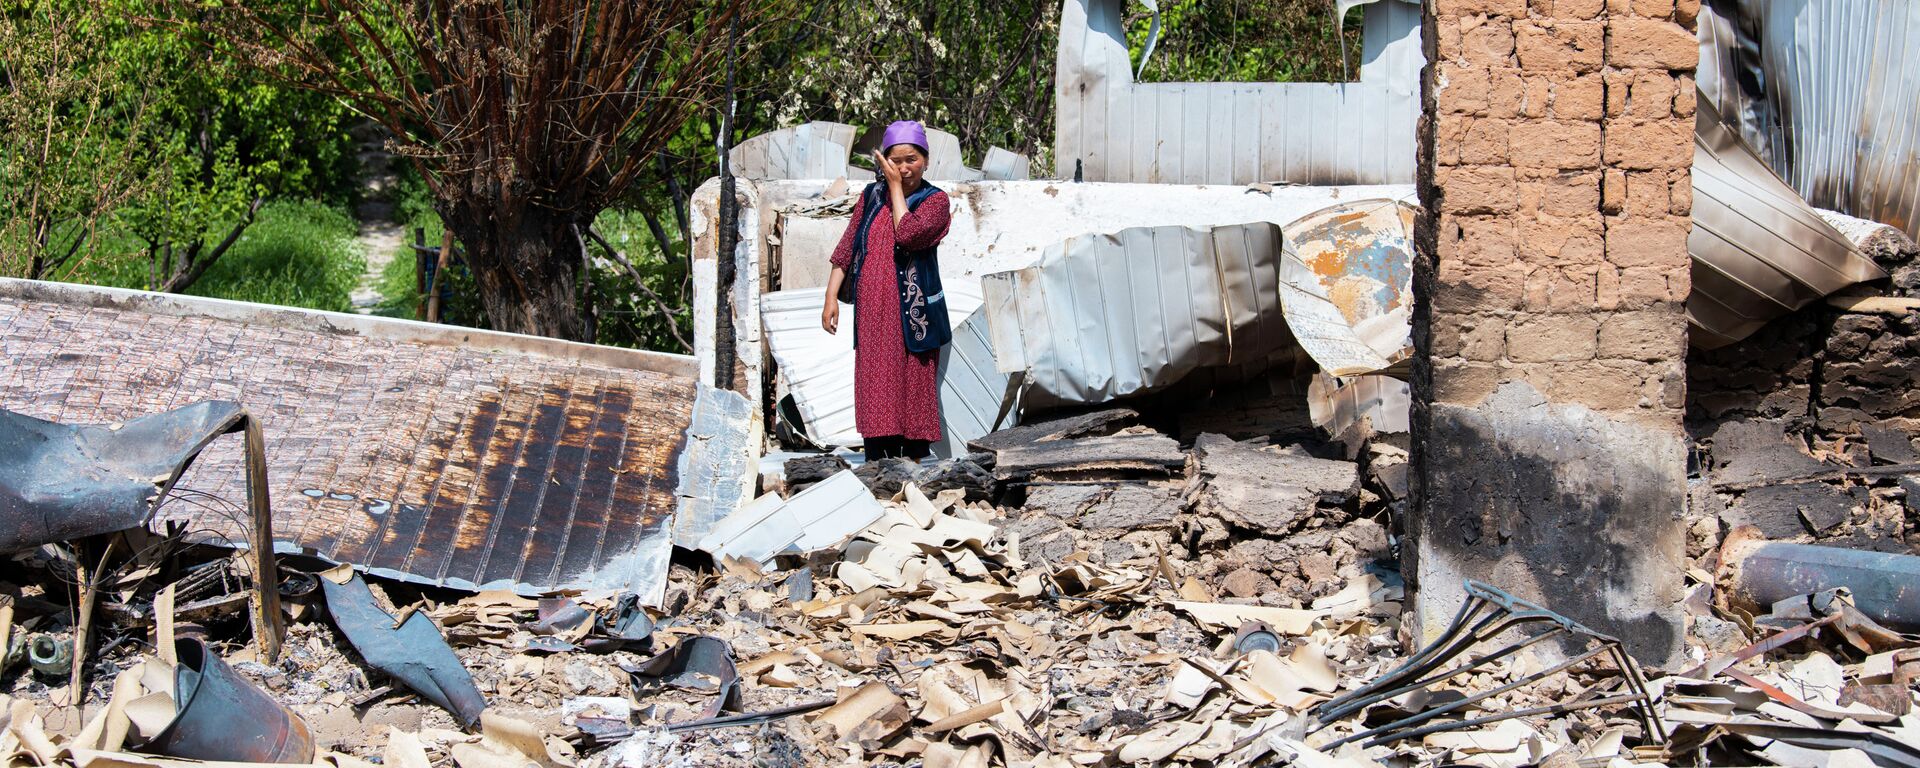 Жительница села Максат Лейлекского района возле своего дома, сгоревшего в ходе приграничного конфликта между Кыргызстаном и Таджикистаном - Sputnik Кыргызстан, 1920, 04.05.2021